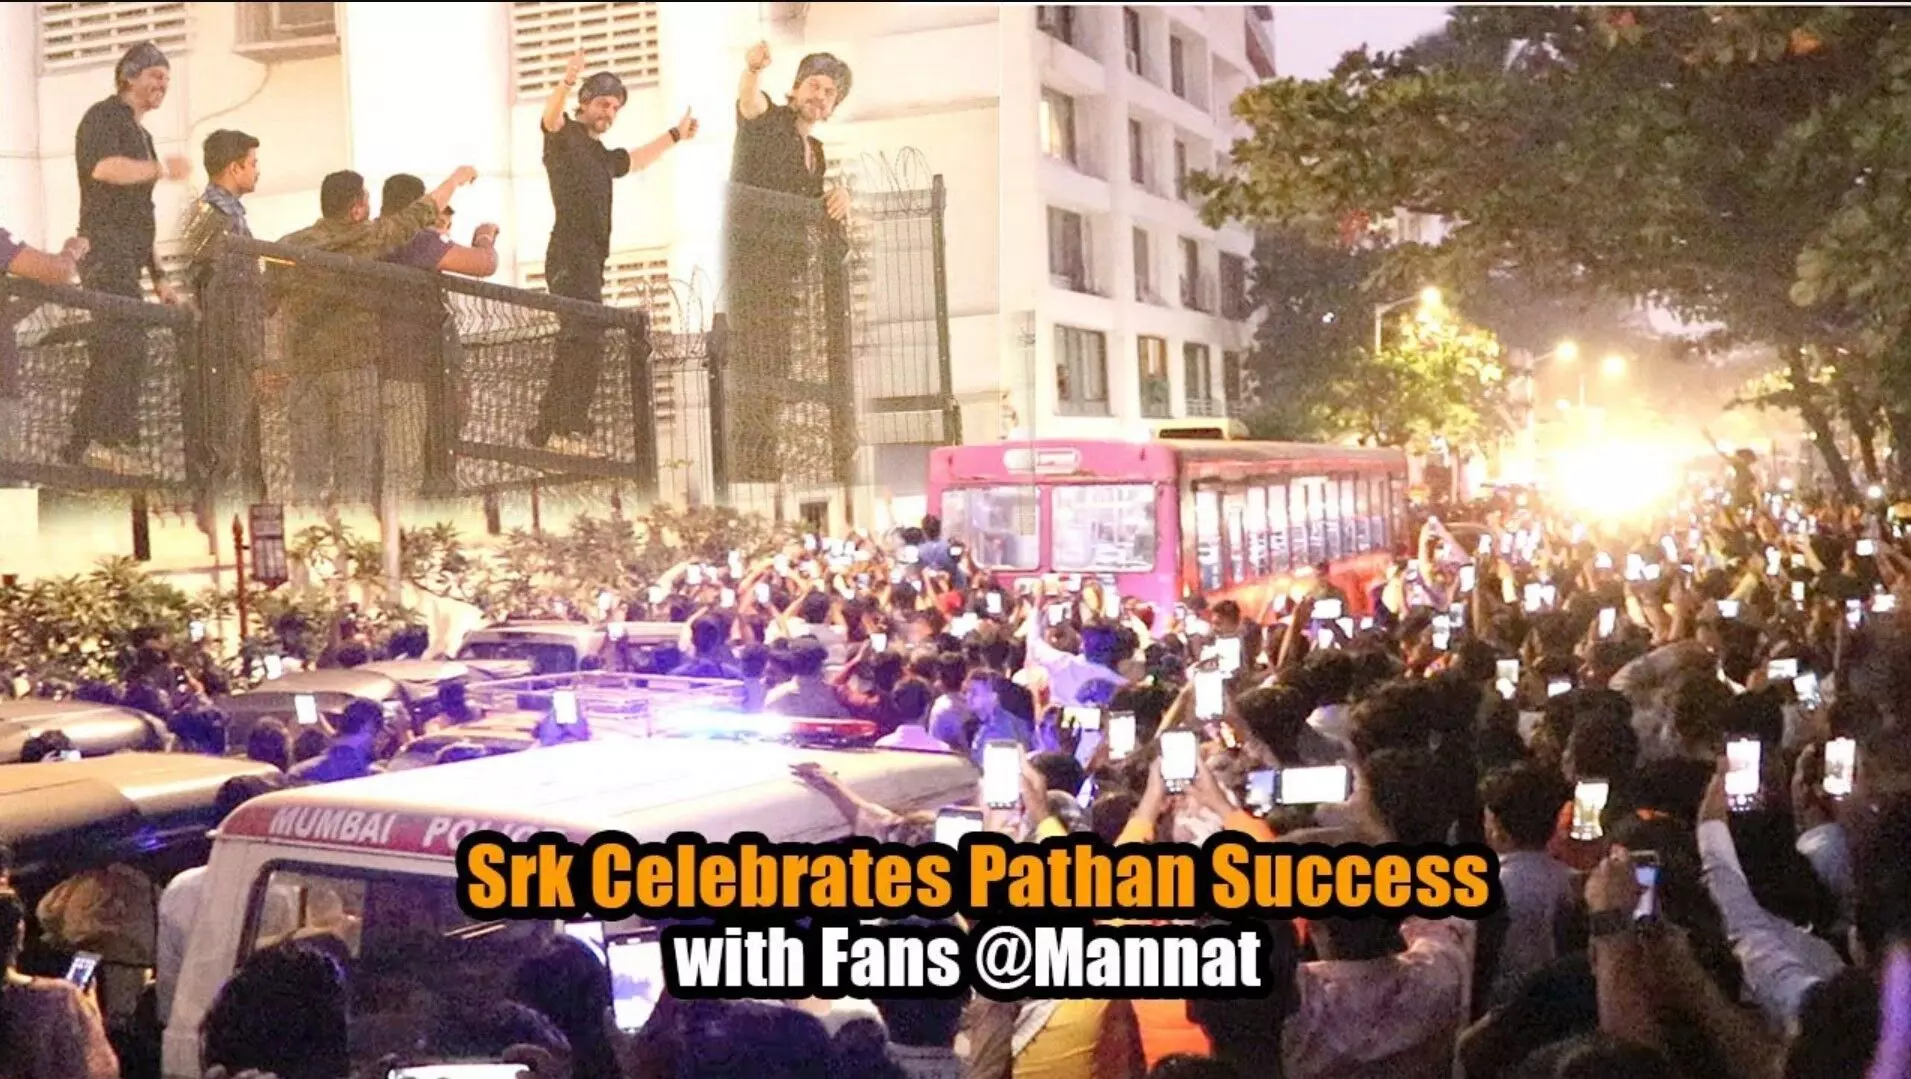 शाहरुख खान पठान की अपार सफलता के बाद मन्नत के बाहर  प्रशंसकों को दिया दर्शन, देखें वीडियो